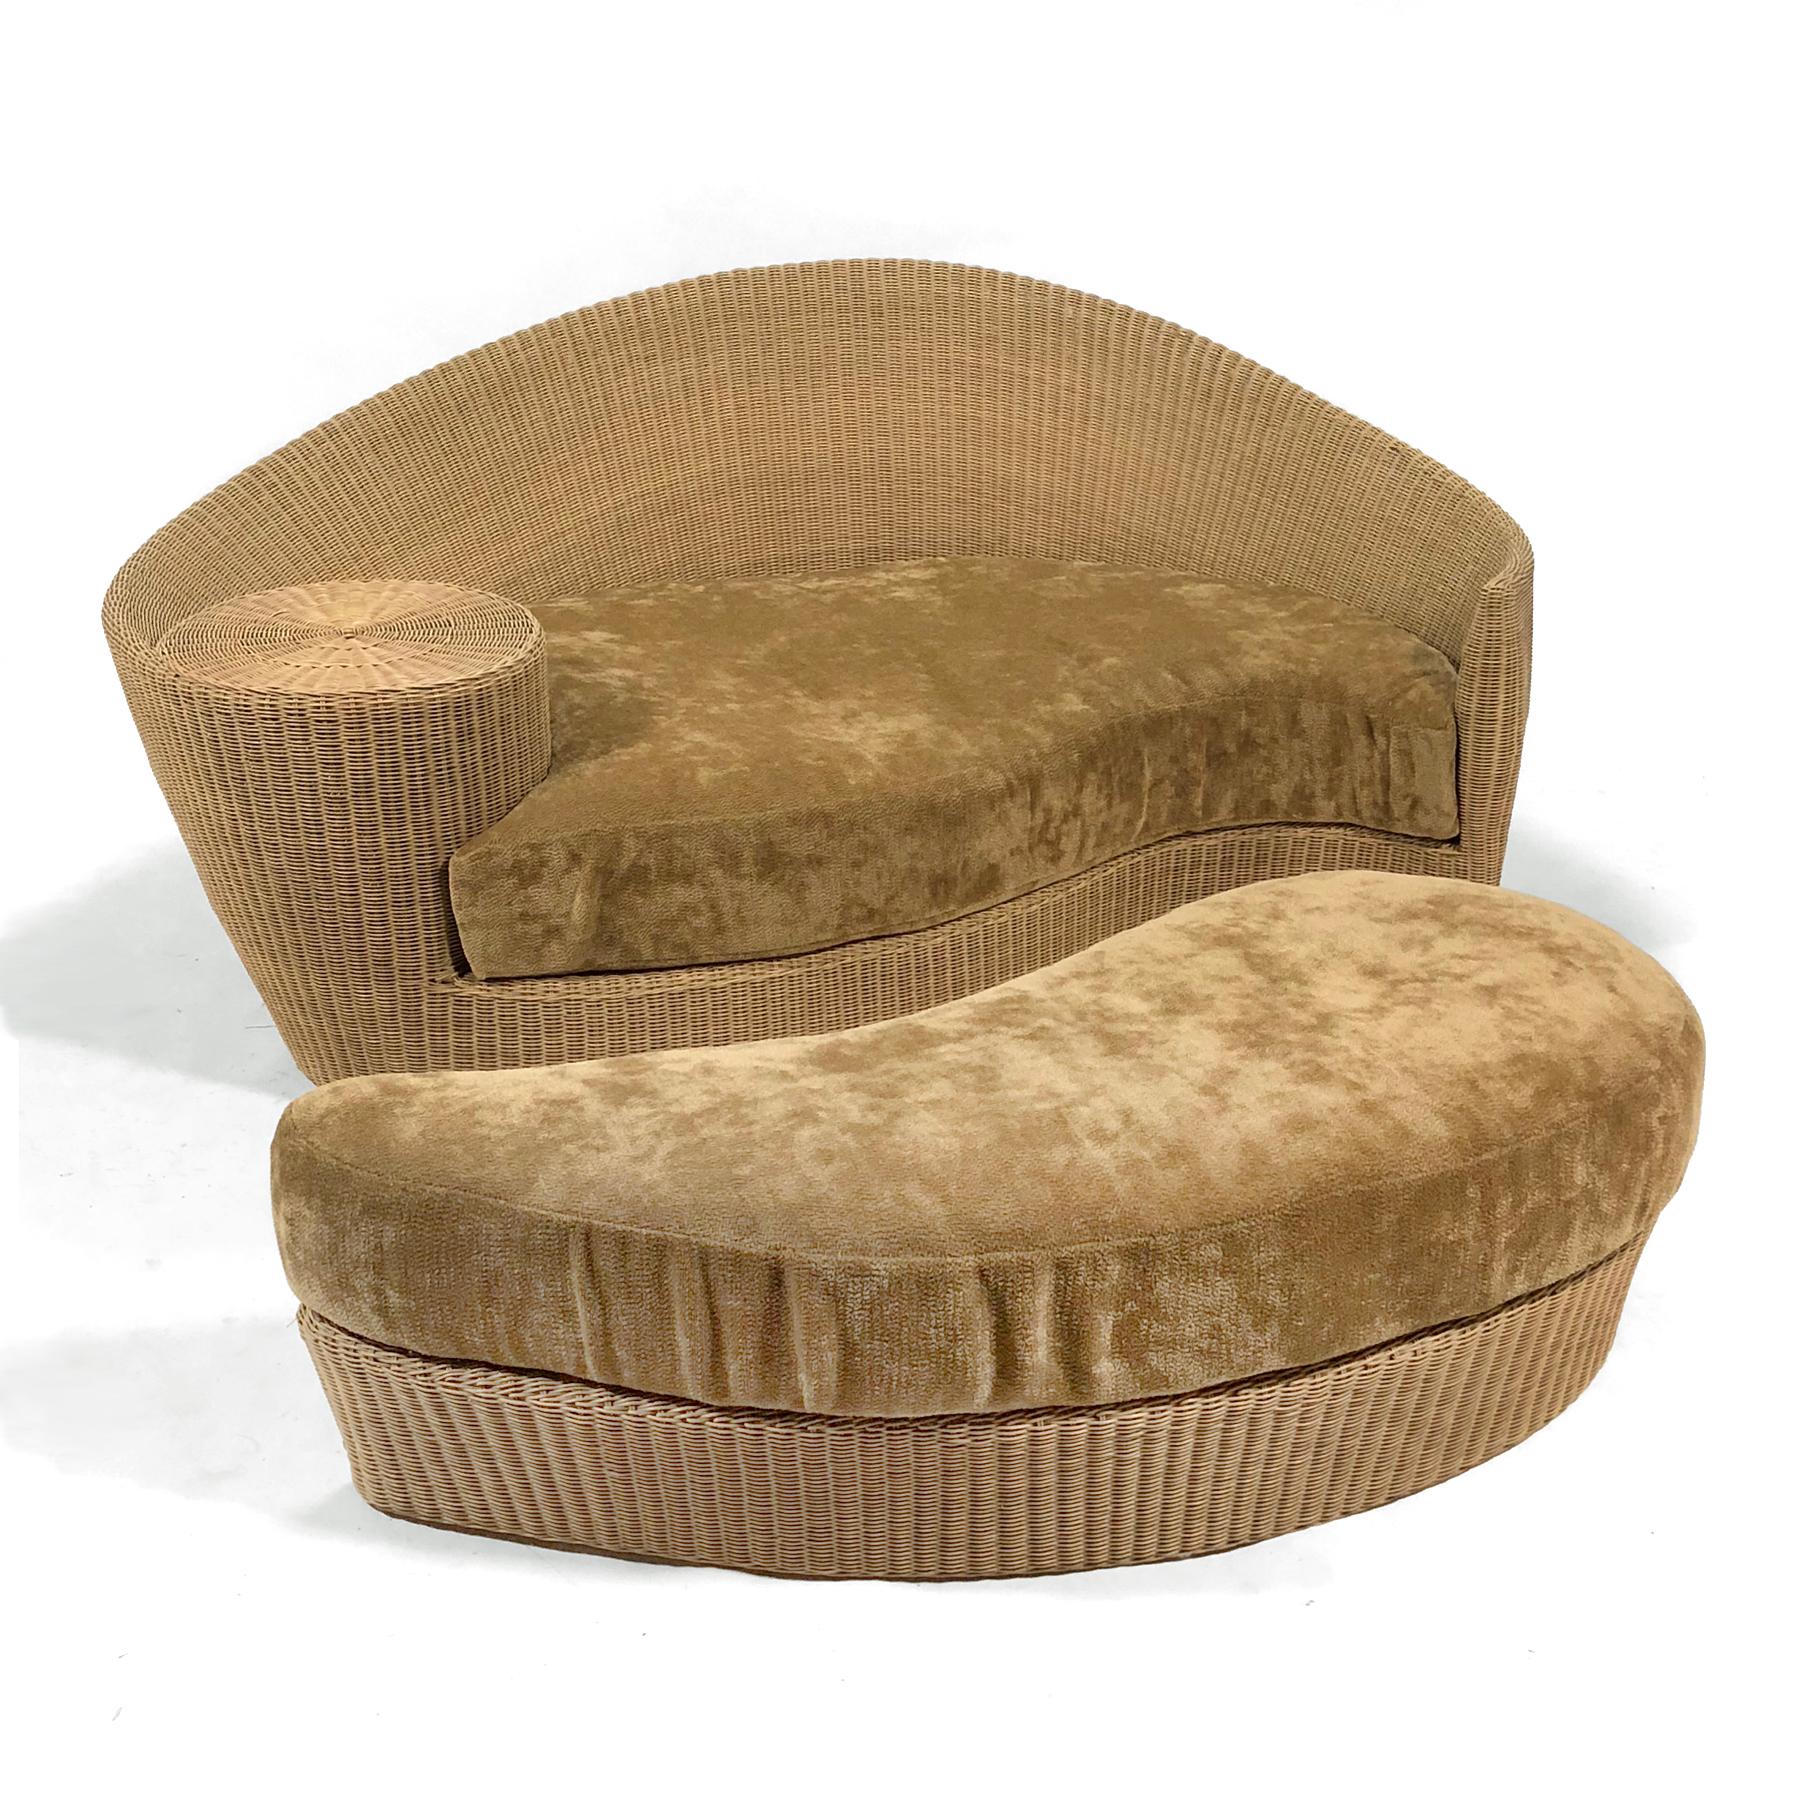 Kagans Entwurf für Barlow Tyrie ist ein perfektes Beispiel für seine Designästhetik. Die wellenförmige, organische Form, die an eine Nautilus erinnert, umhüllt den Sitzenden und bietet eine kleine Tischfläche. Der Nesting-Ottoman vergrößert die